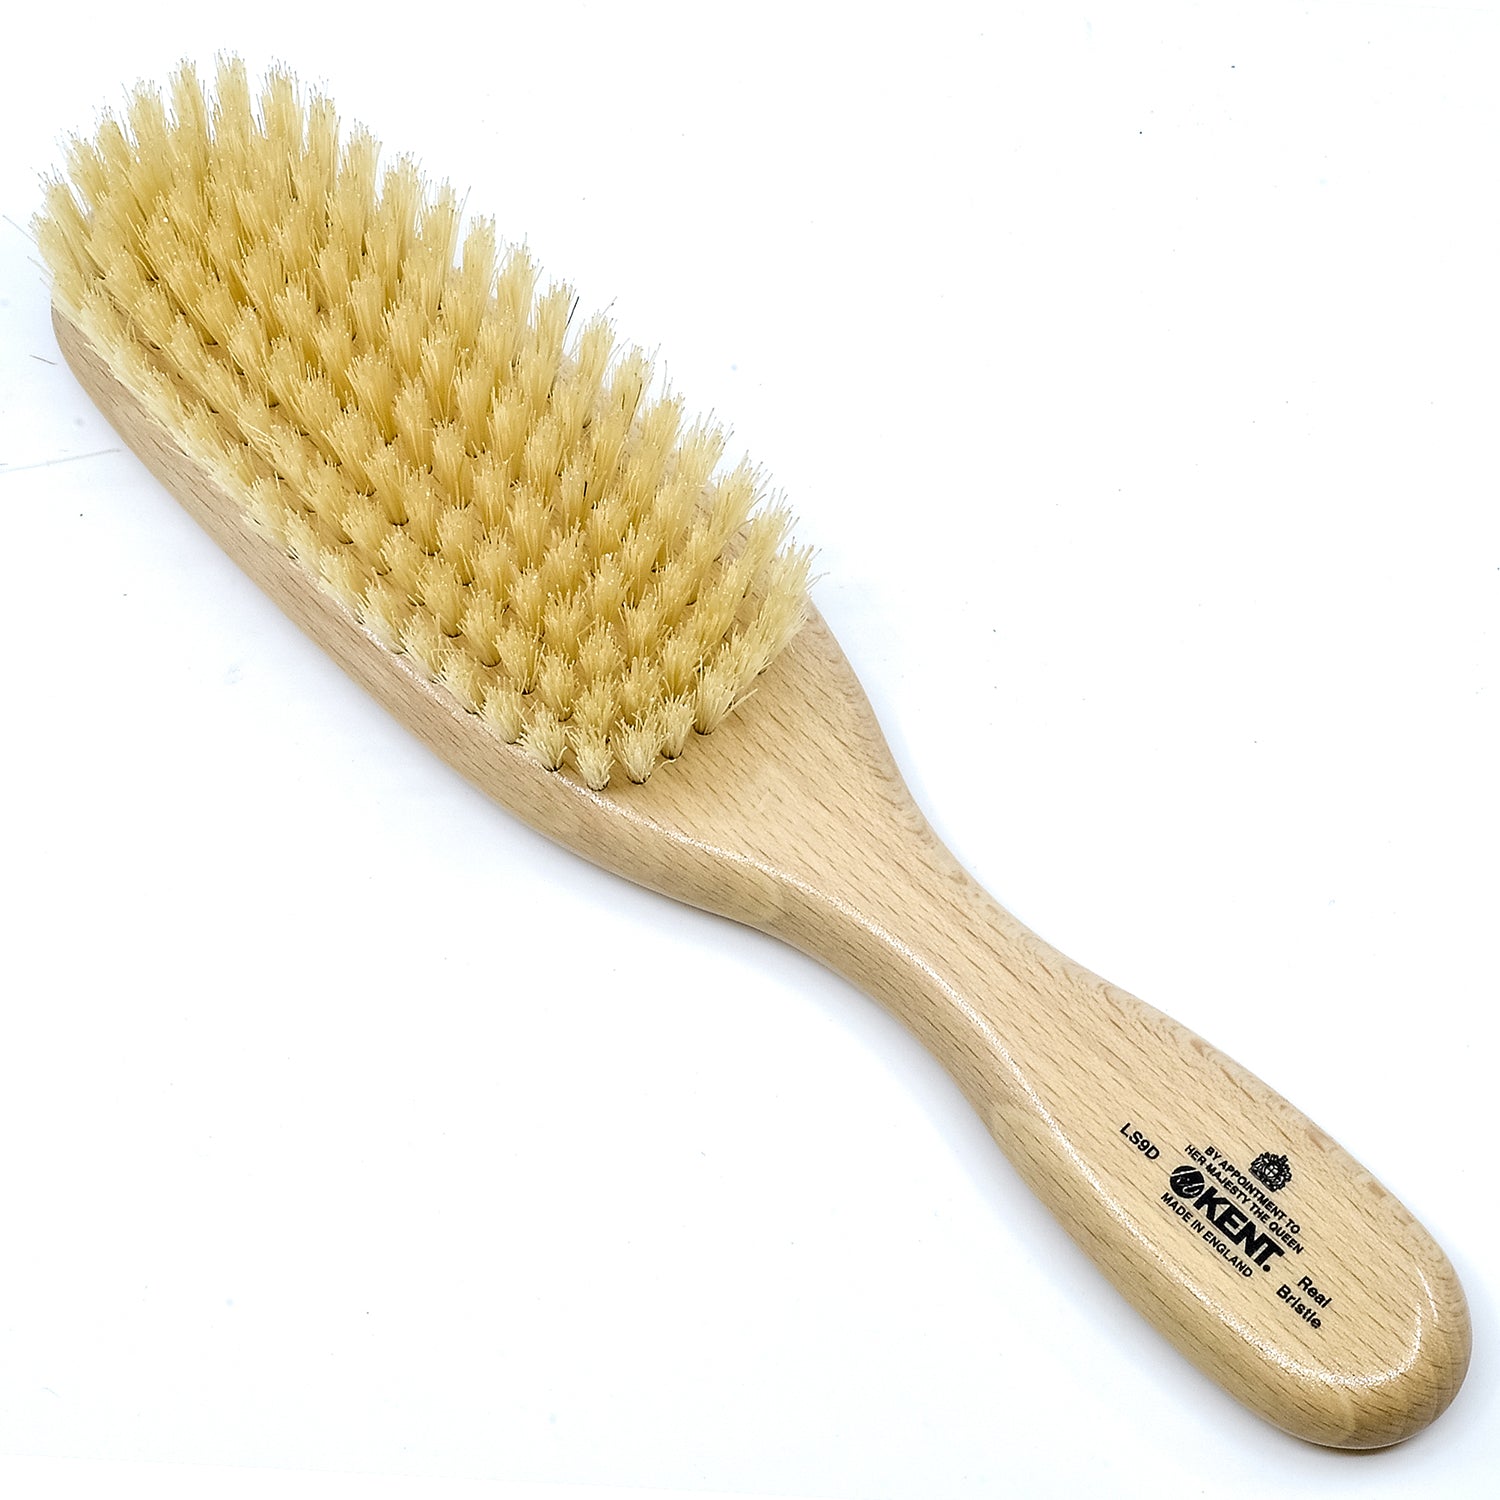 MagNAILZ Dual Brush ( 9mm thin brush + oval 4 flat brush) –